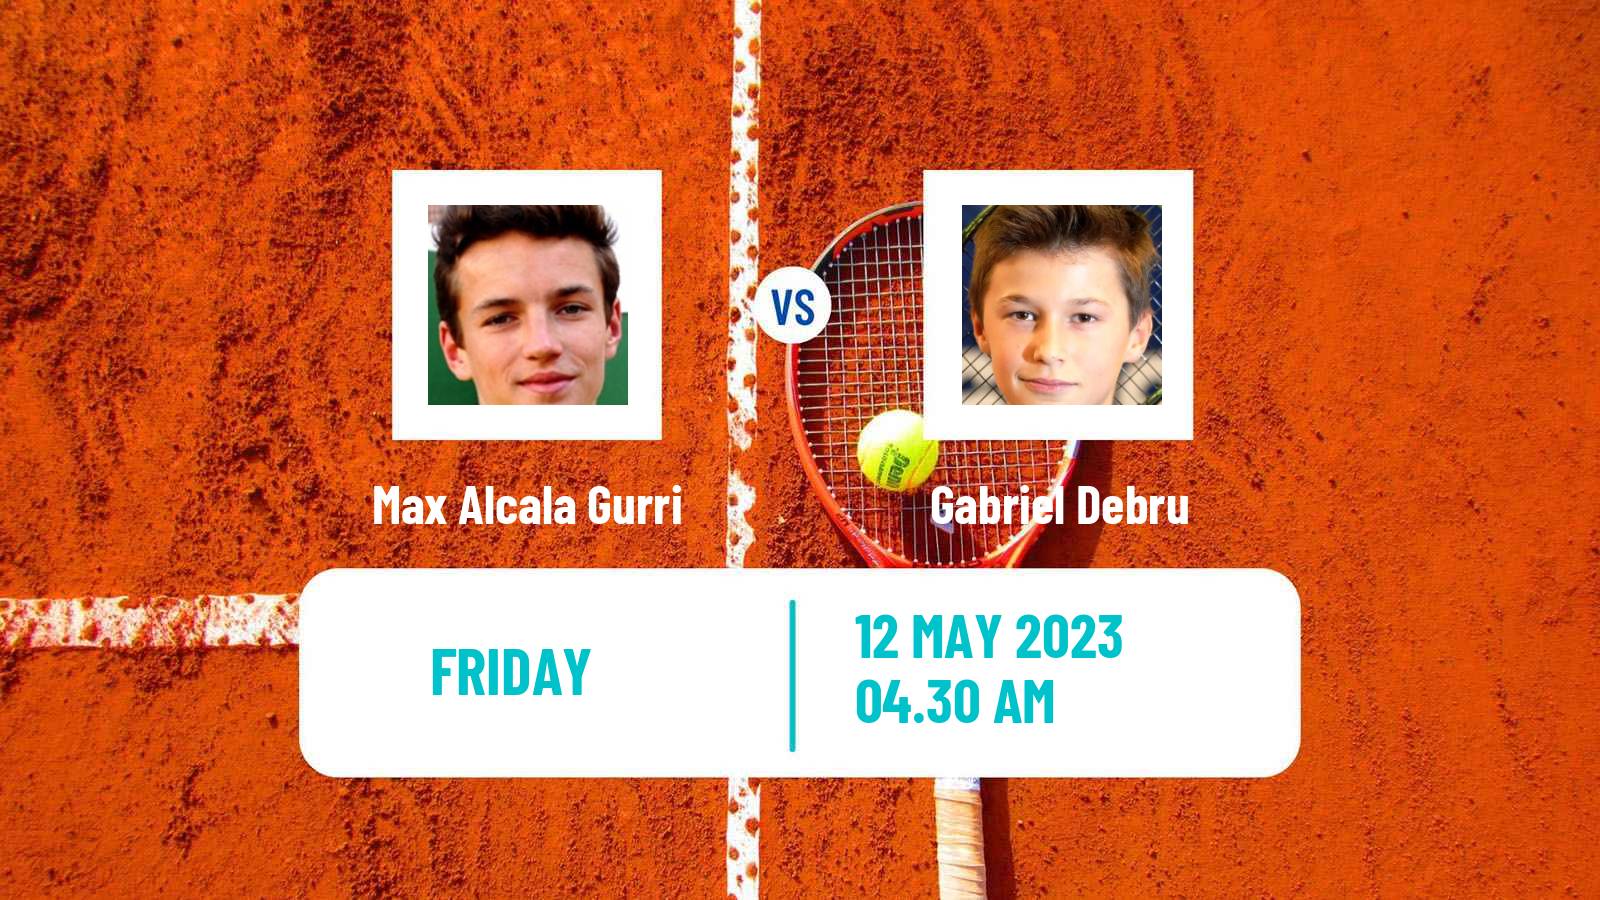 Tennis ITF Tournaments Max Alcala Gurri - Gabriel Debru